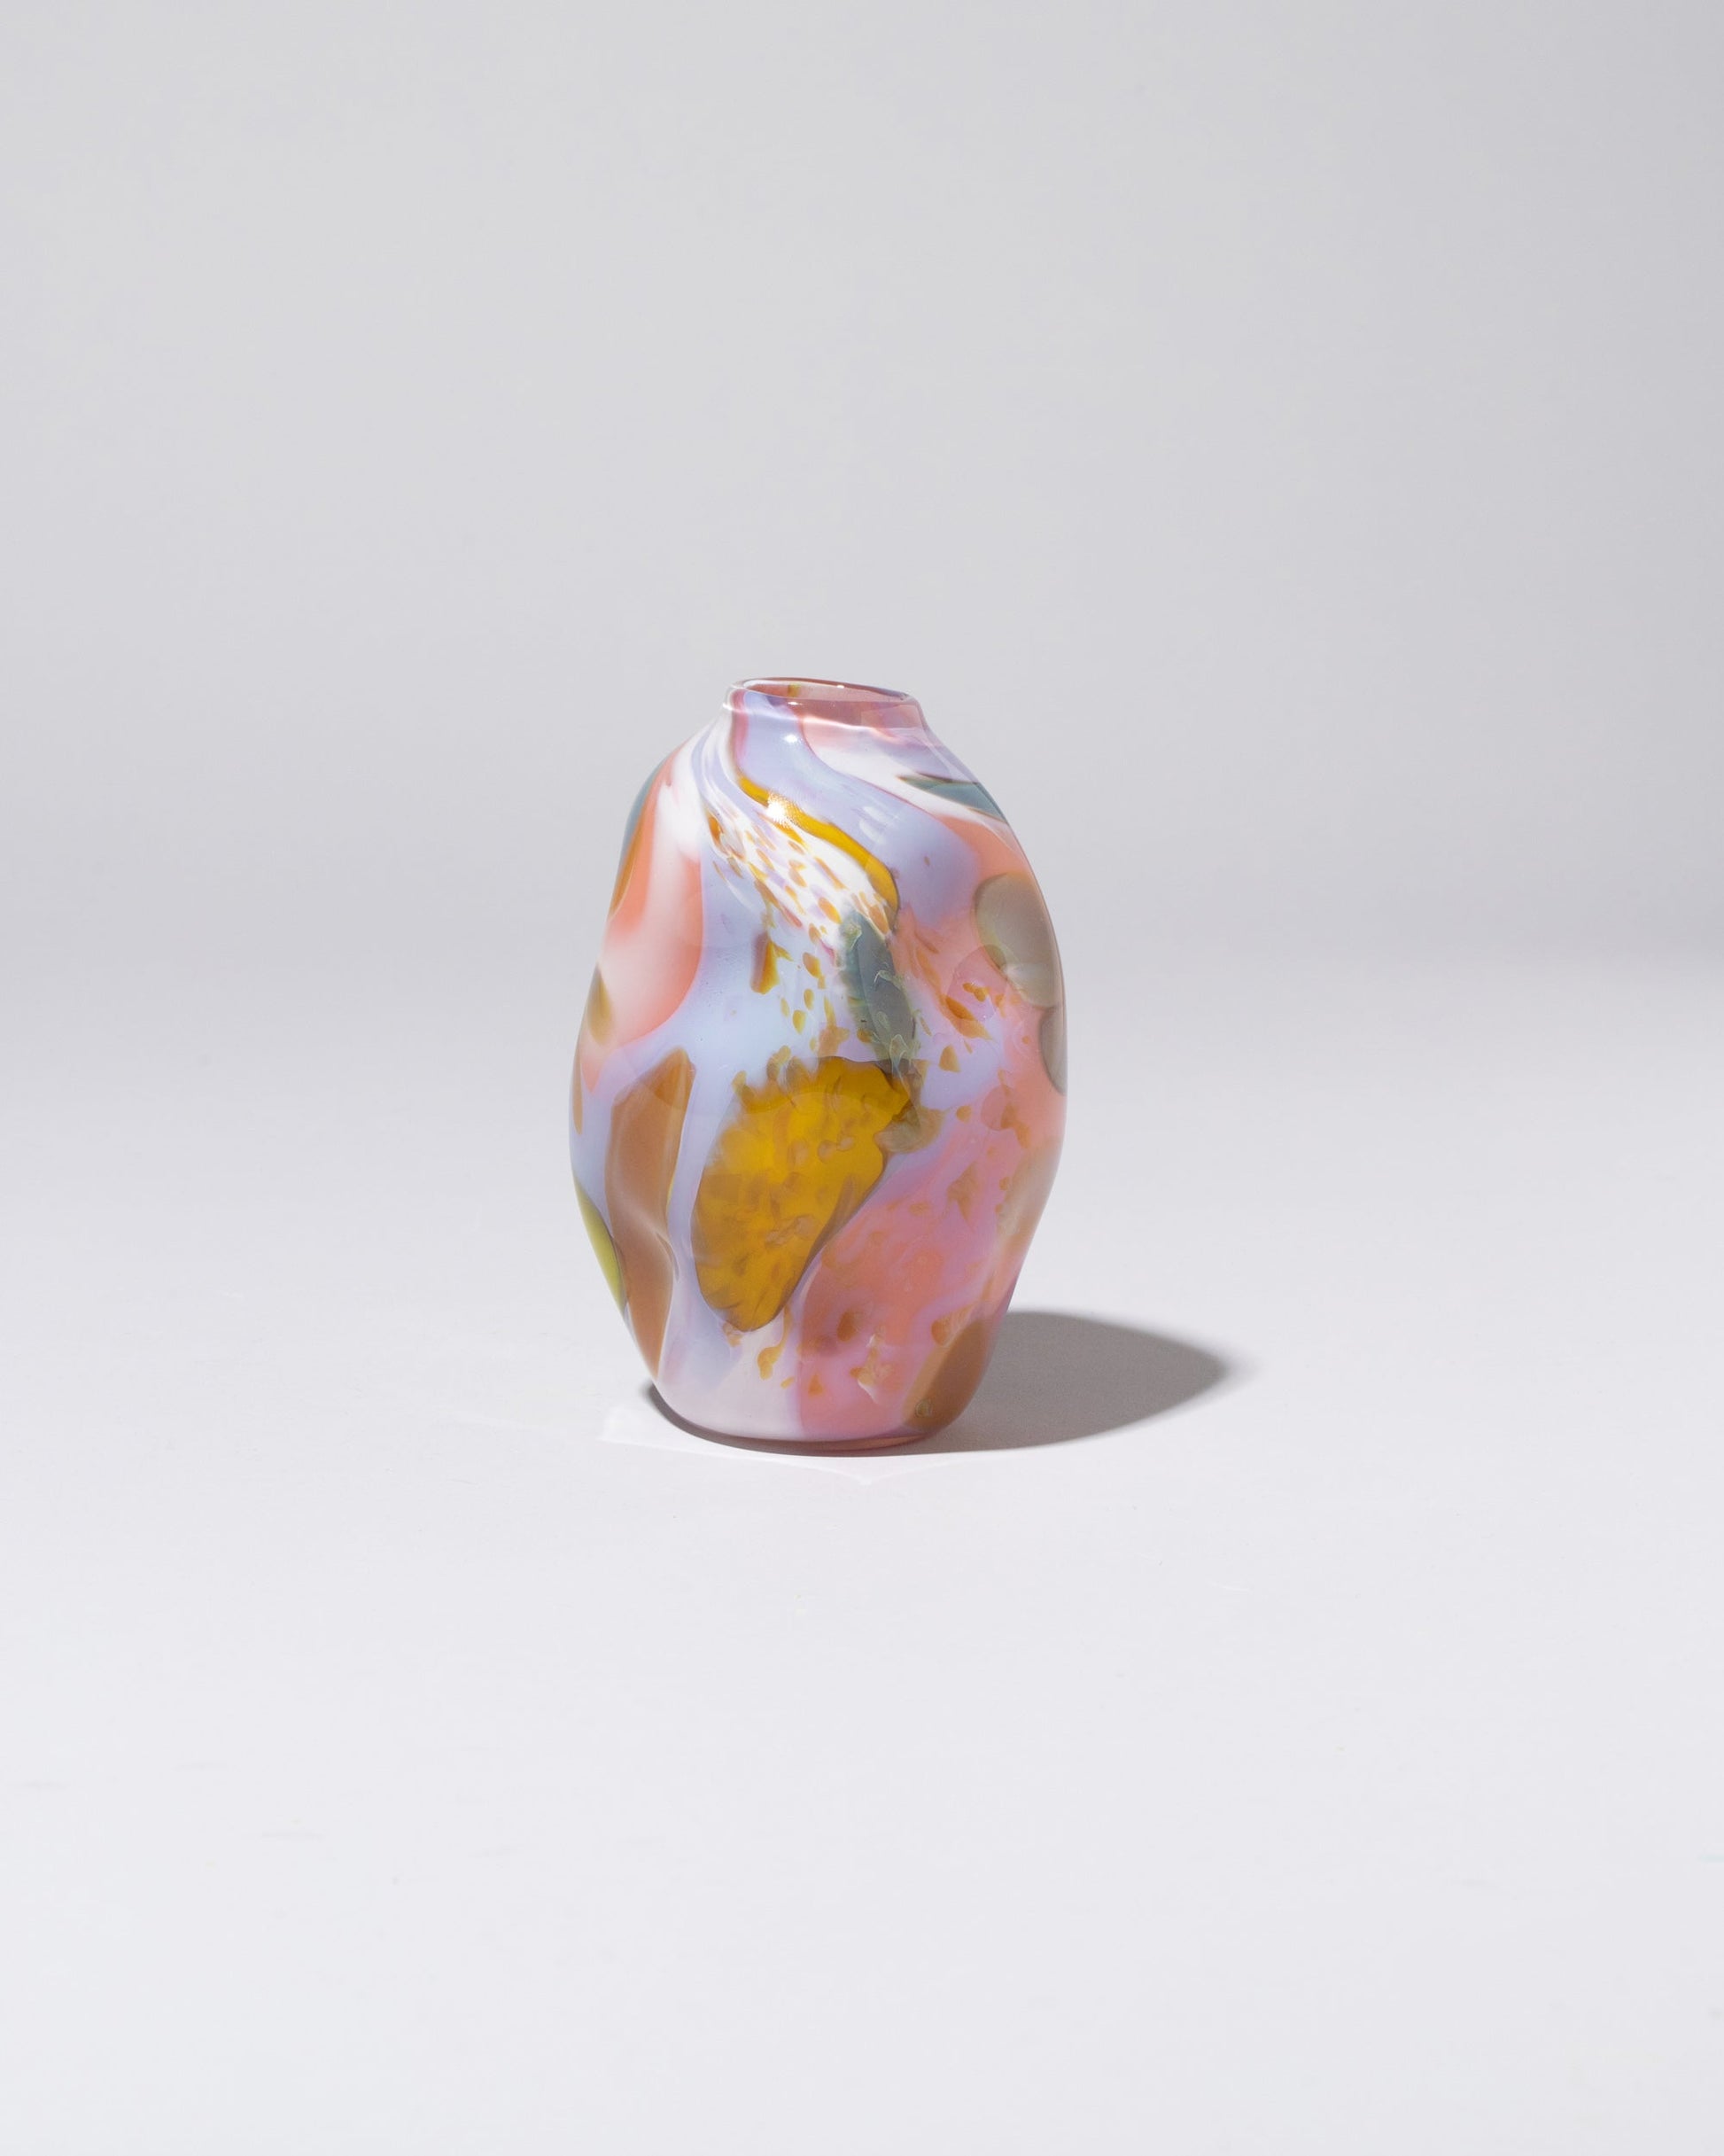 BaleFire Glass Flamingo Epiphany Diamond Bud Vase on light color background.